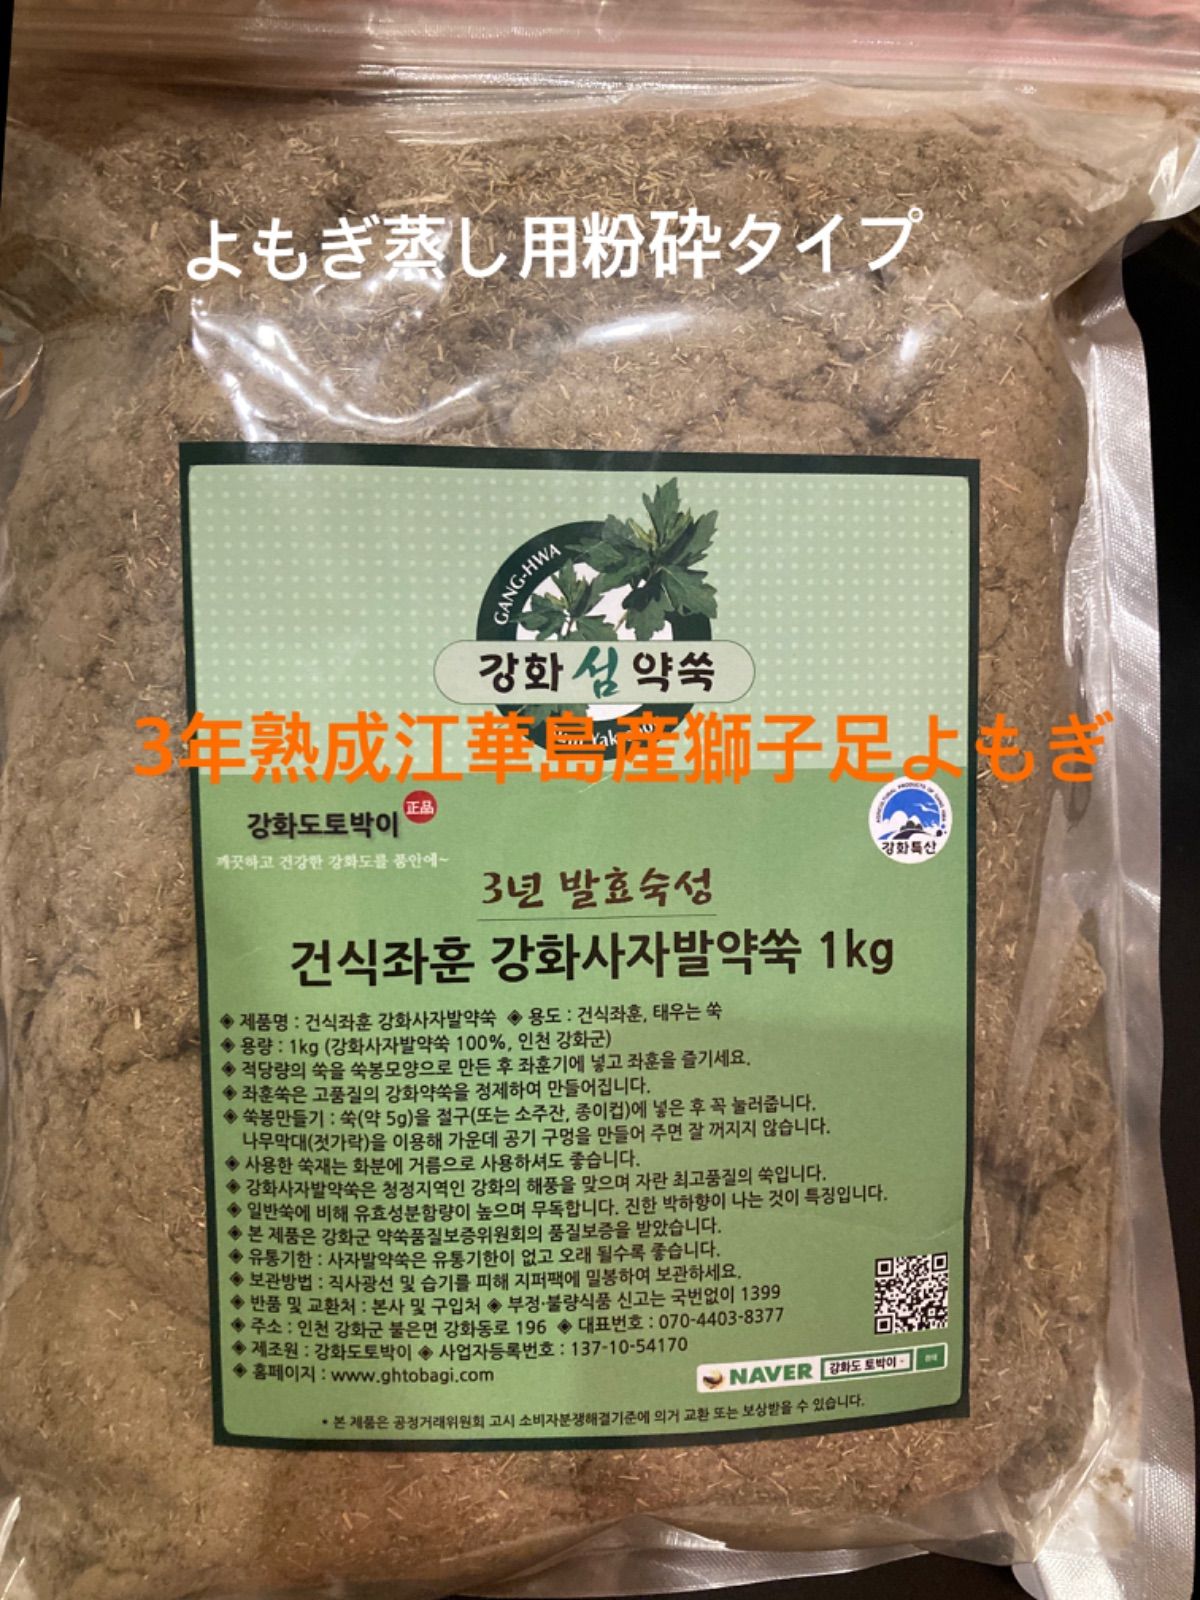 よもぎ蒸し、よもぎ風呂に✨韓国江華島産 3年熟成獅子足よもぎ 1kg